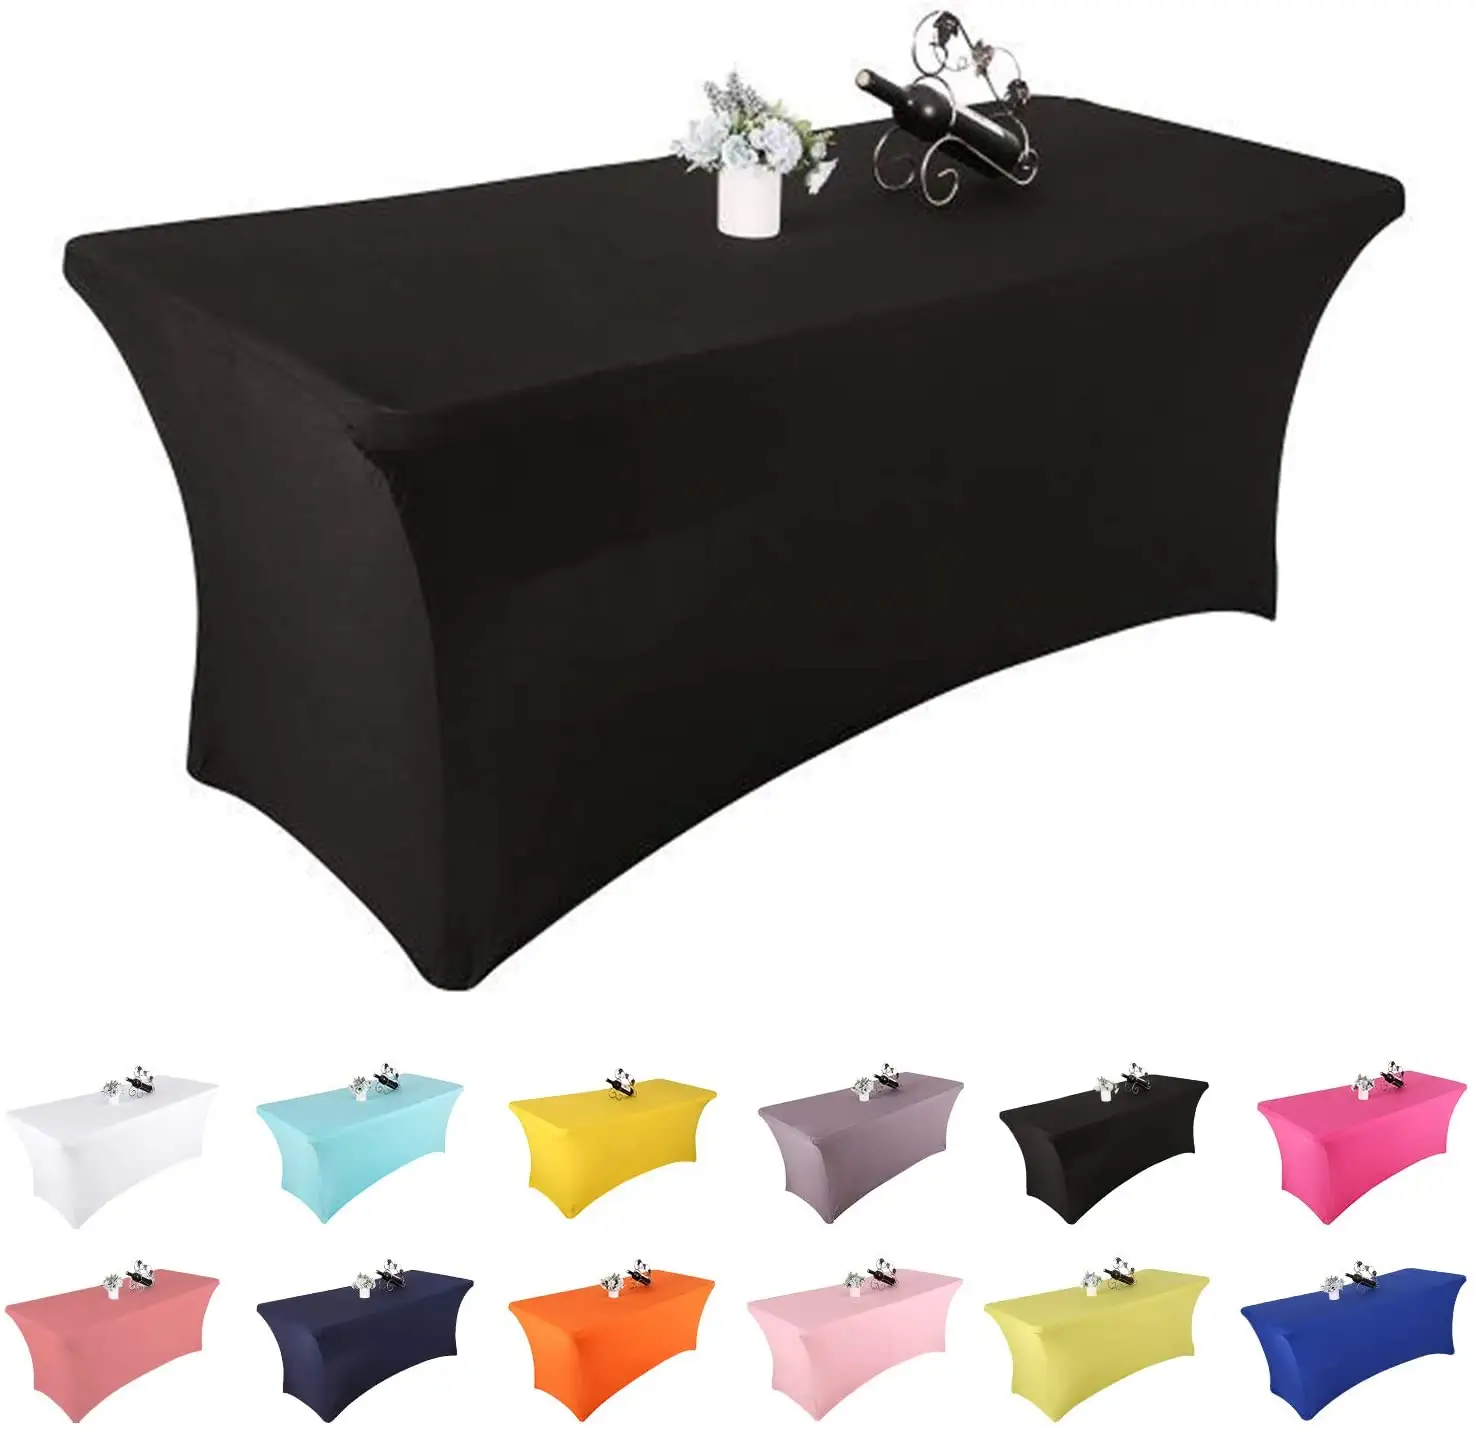 Couverture de Table en Spandex de 6 pieds, couvre-lit rectangulaire, en Polyester, extensible, pour lit